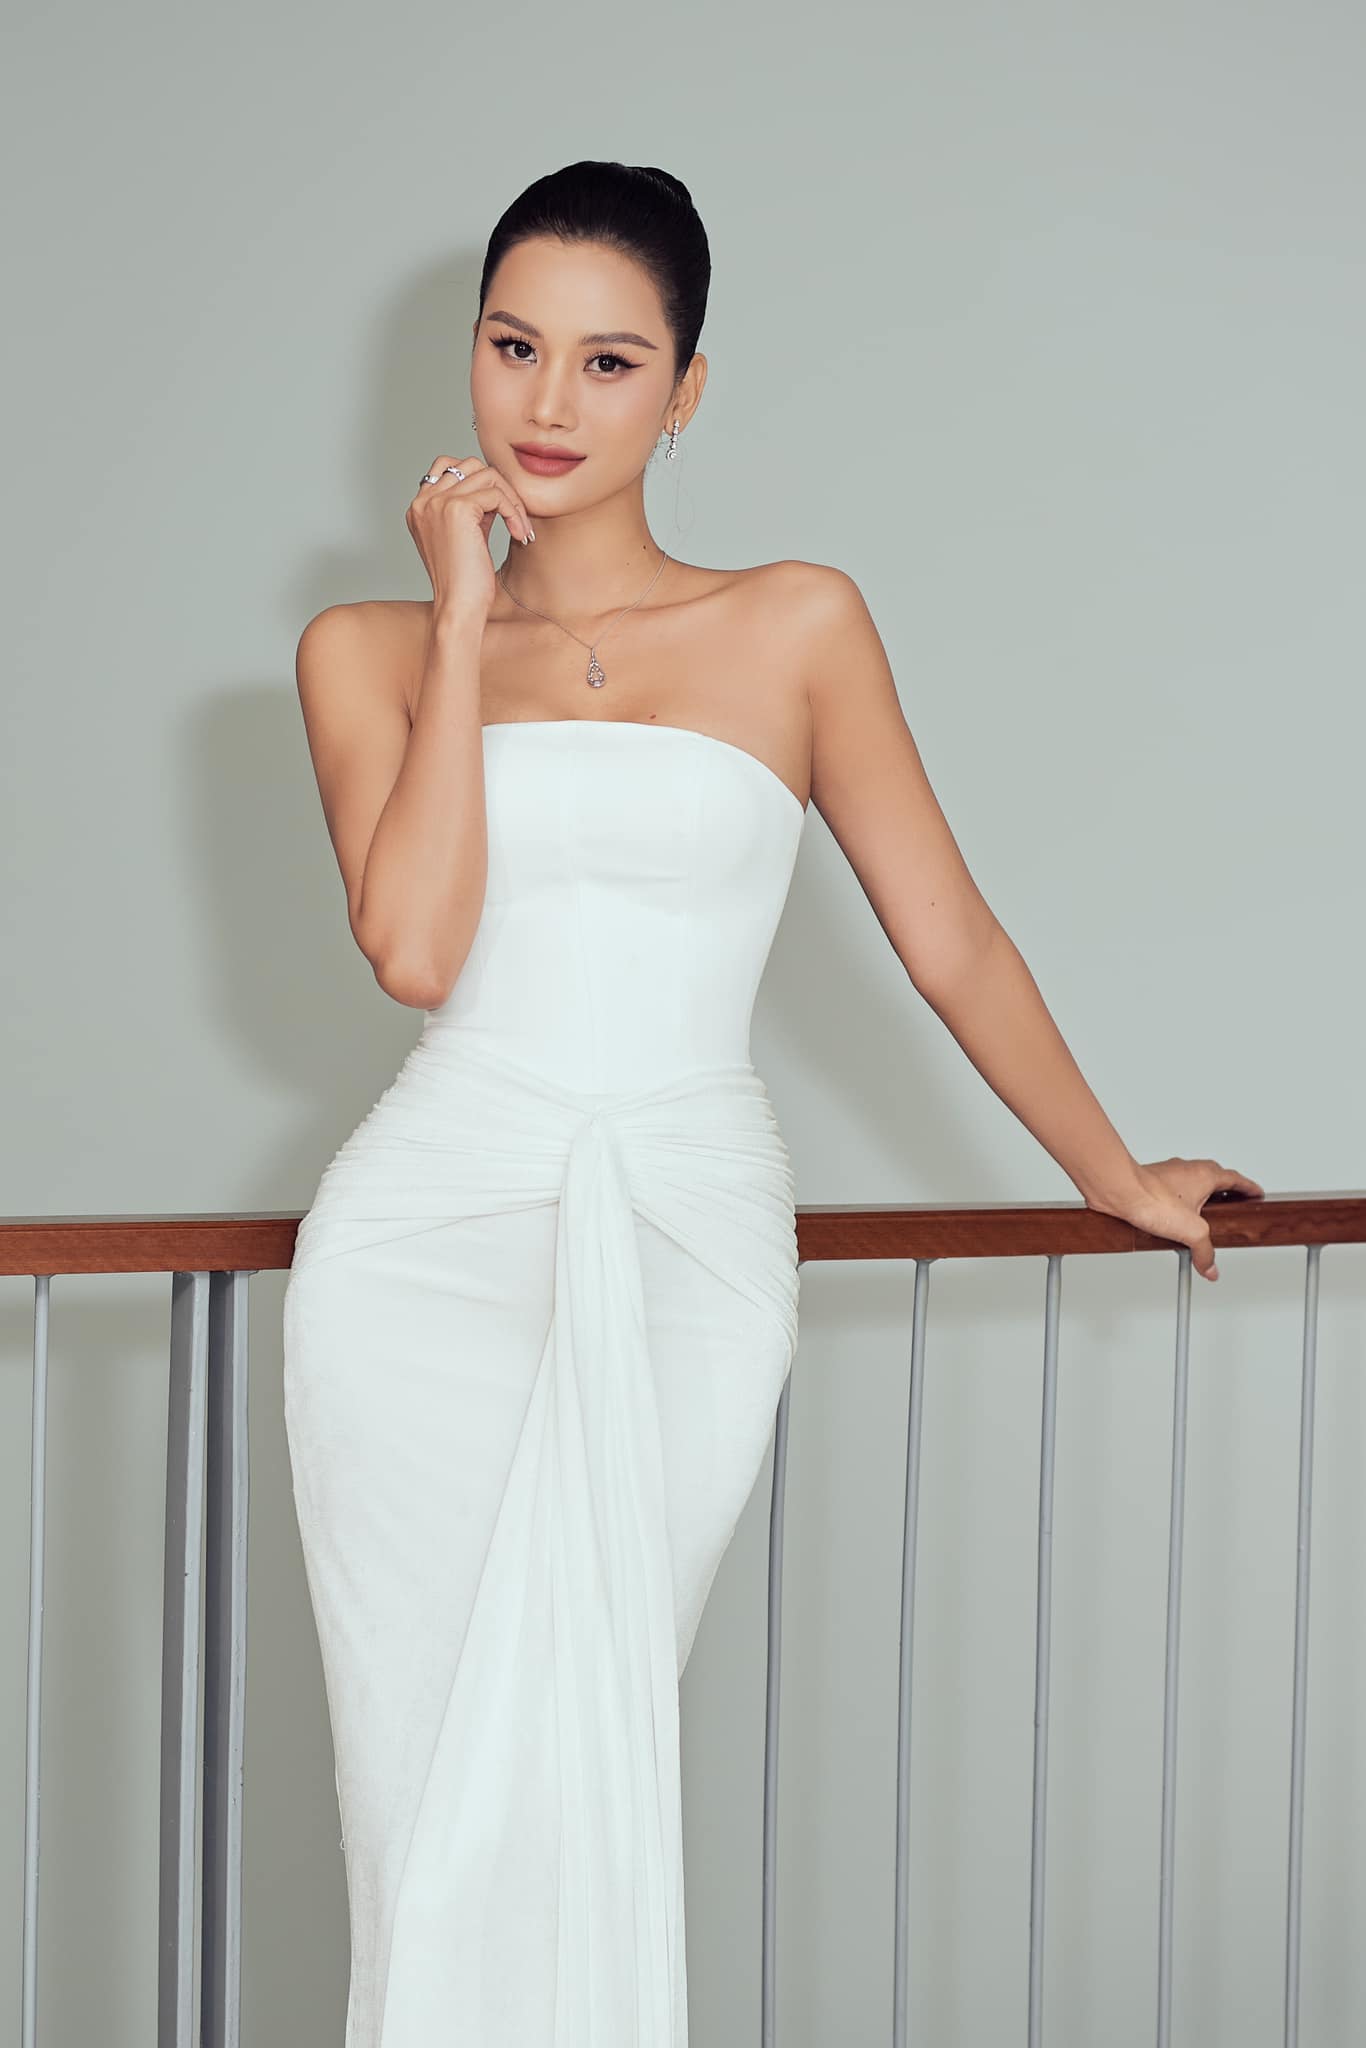 Hương Ly: Hành trình từ mỹ nhân 10 năm chăn trâu đến "người phụ nữ quyền lực" Miss Universe Vietnam- Ảnh 4.